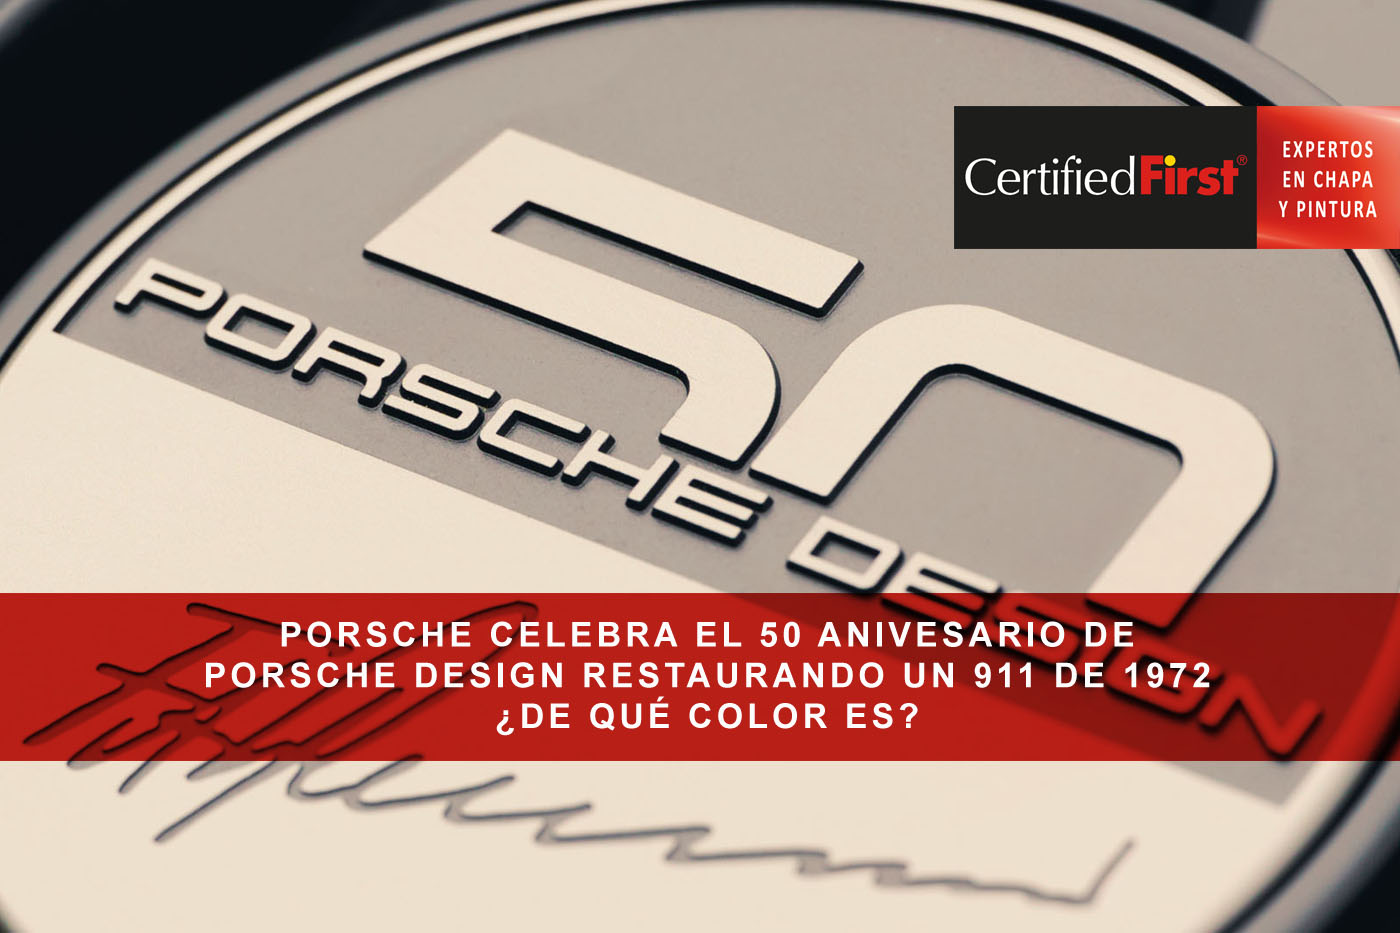 Porsche celebra el 50 anivesario de Porsche Design restaurando un 911 de 1972 ¿de qué color es?